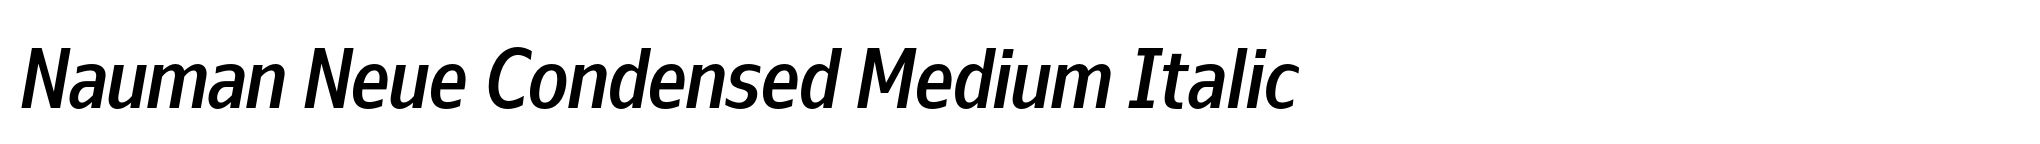 Nauman Neue Condensed Medium Italic image